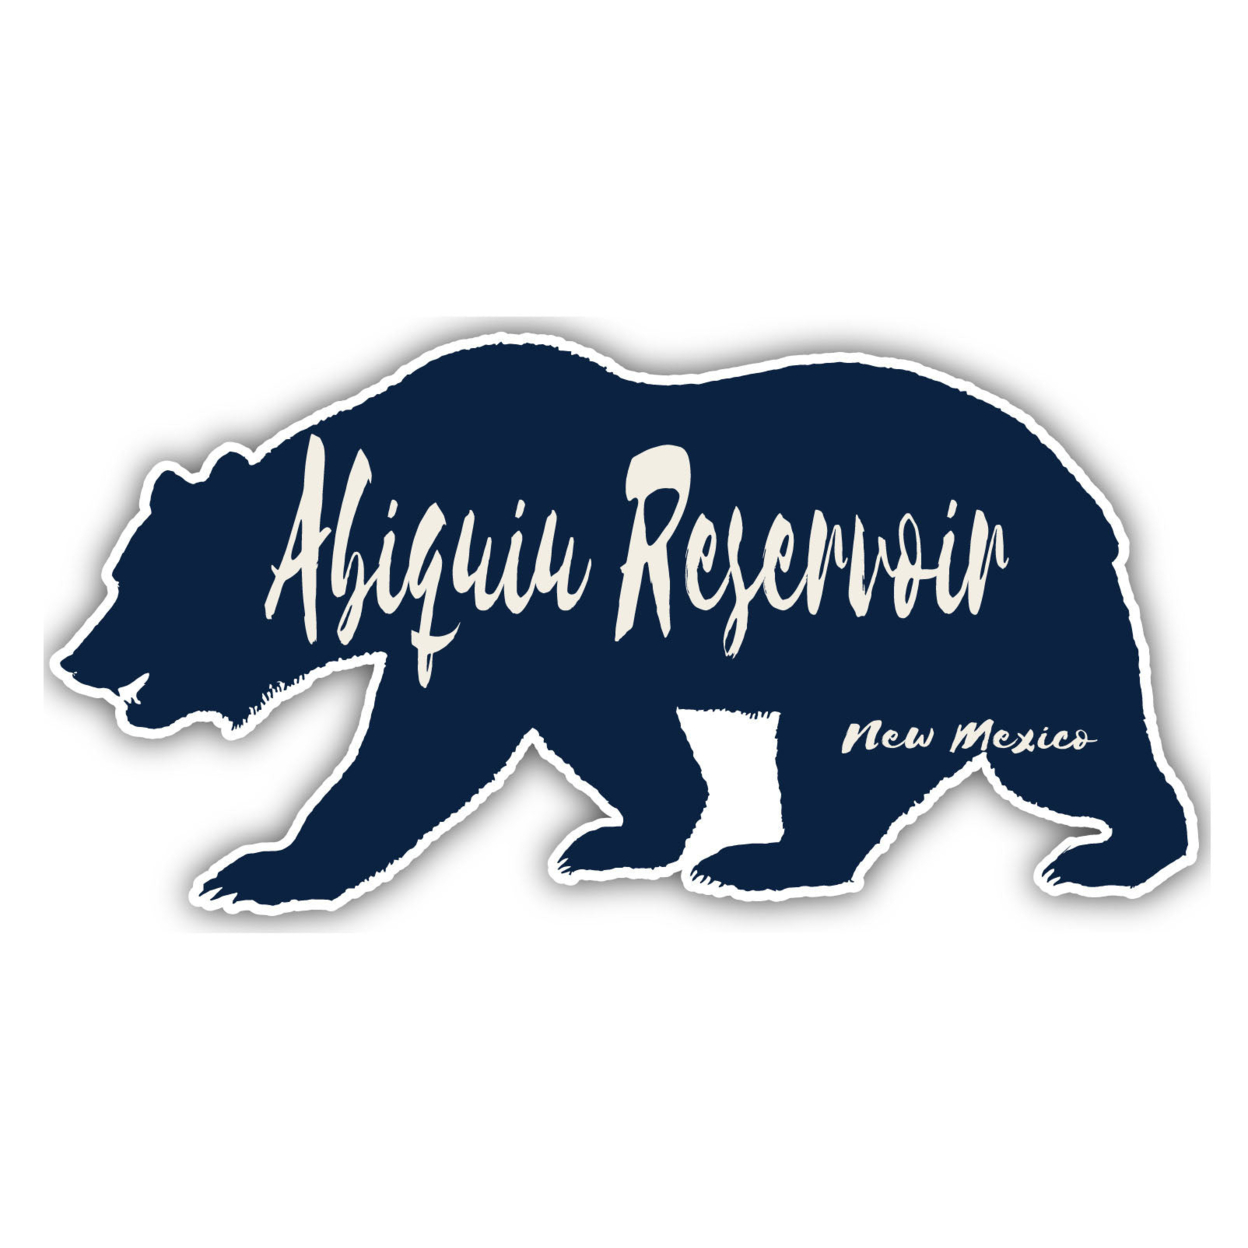 Abiquiu Reservoir New Mexico Souvenir Decorative Stickers (Choose Theme And Size) - Single Unit, 12-Inch, Bear